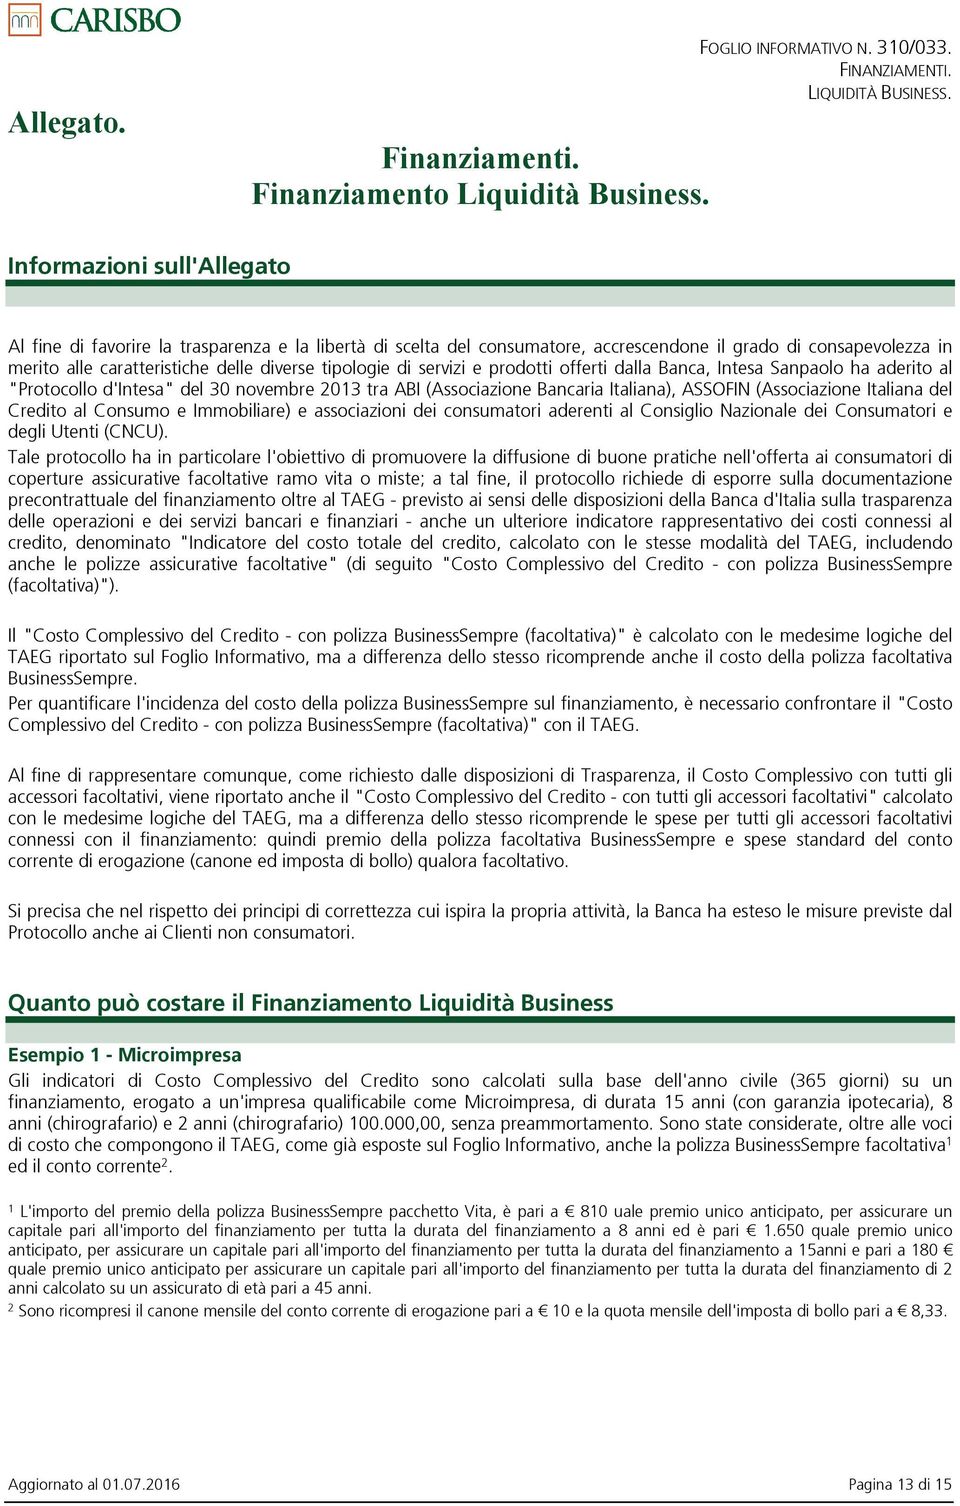 di servizi e prodotti offerti dalla Banca, Intesa Sanpaolo ha aderito al "Protocollo d'intesa" del 30 novembre 2013 tra ABI (Associazione Bancaria Italiana), ASSOFIN (Associazione Italiana del